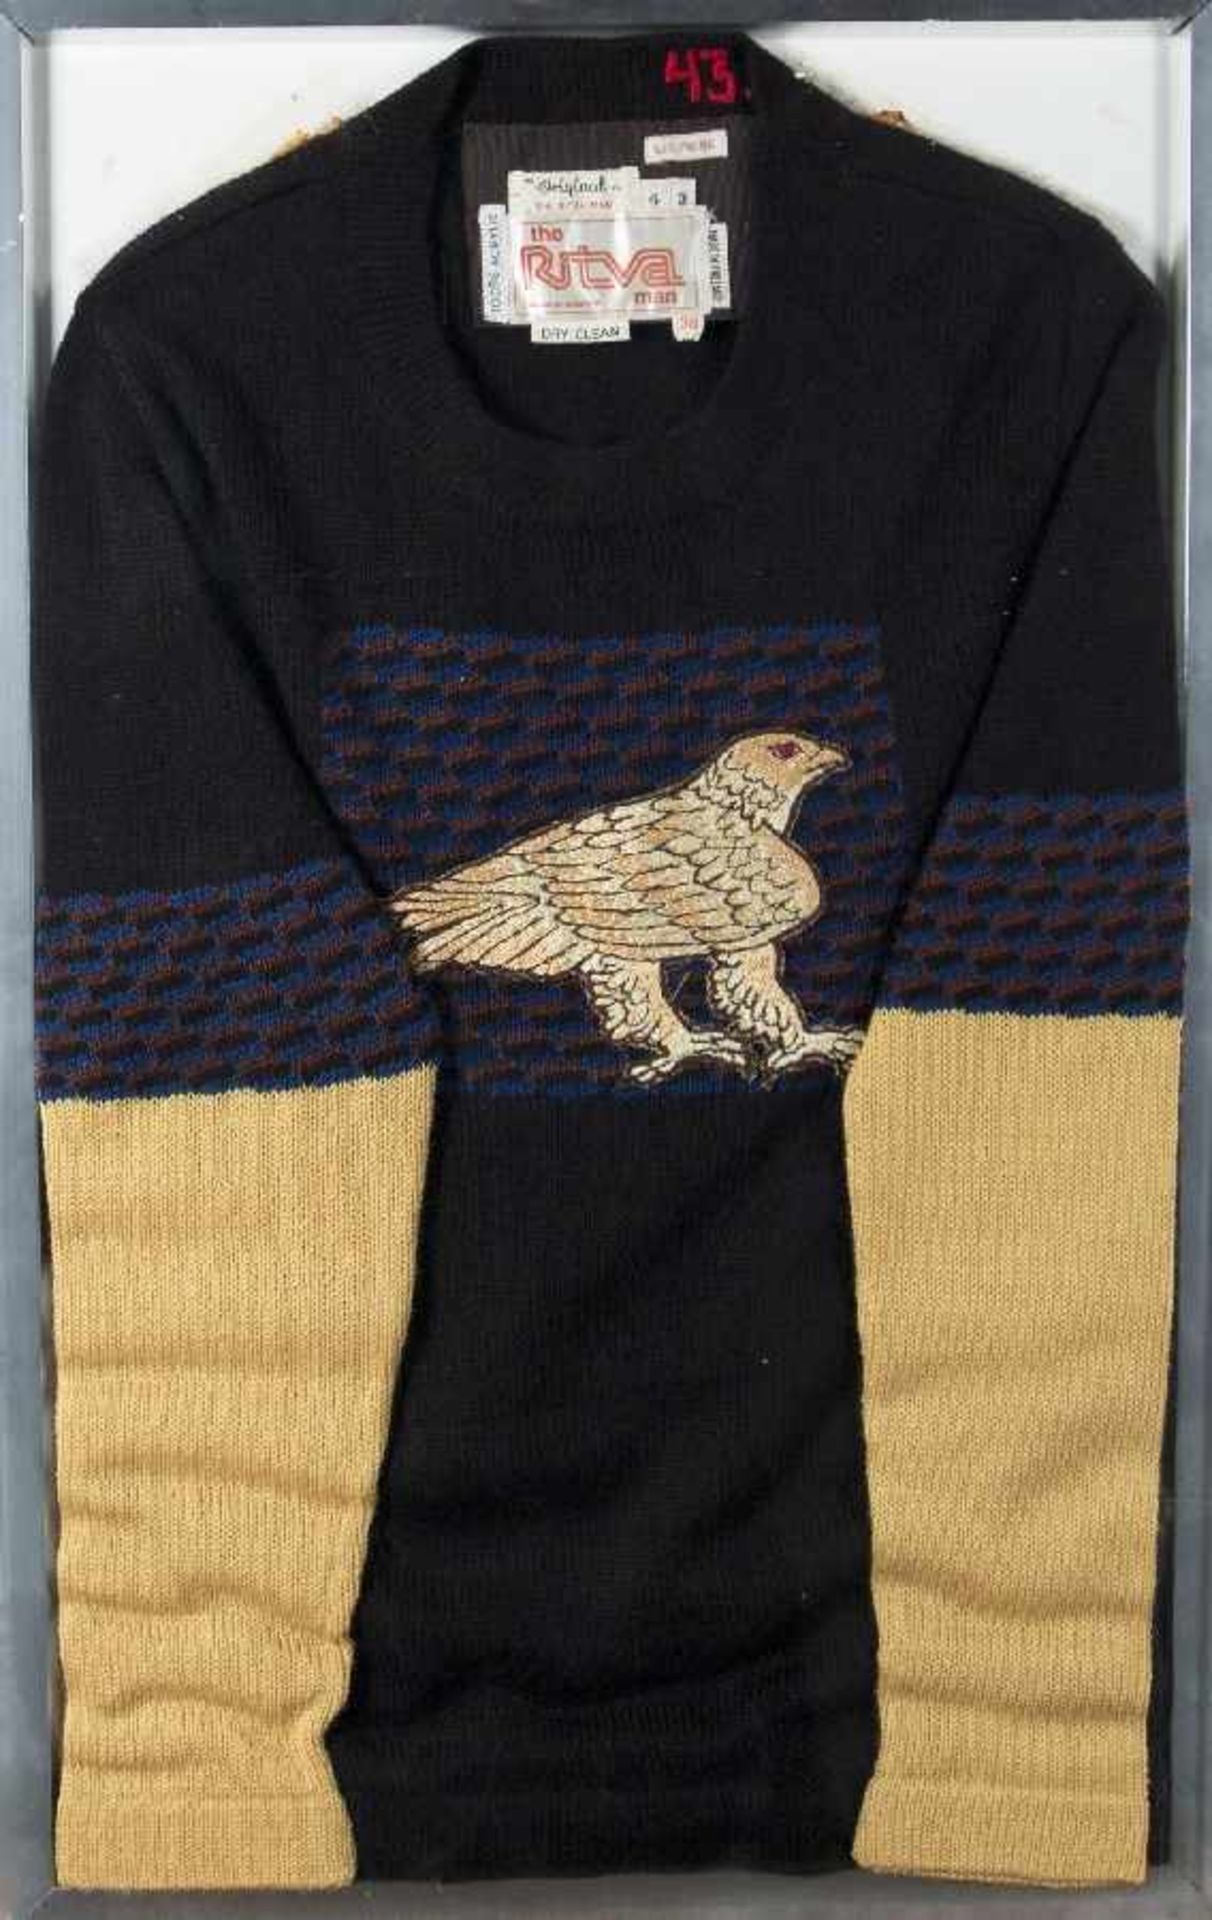 Elisabeth Frink 1930 Thurlow/Suffolk - 1993 Eagel Sweater (Entwurf für "The Ritva Man")